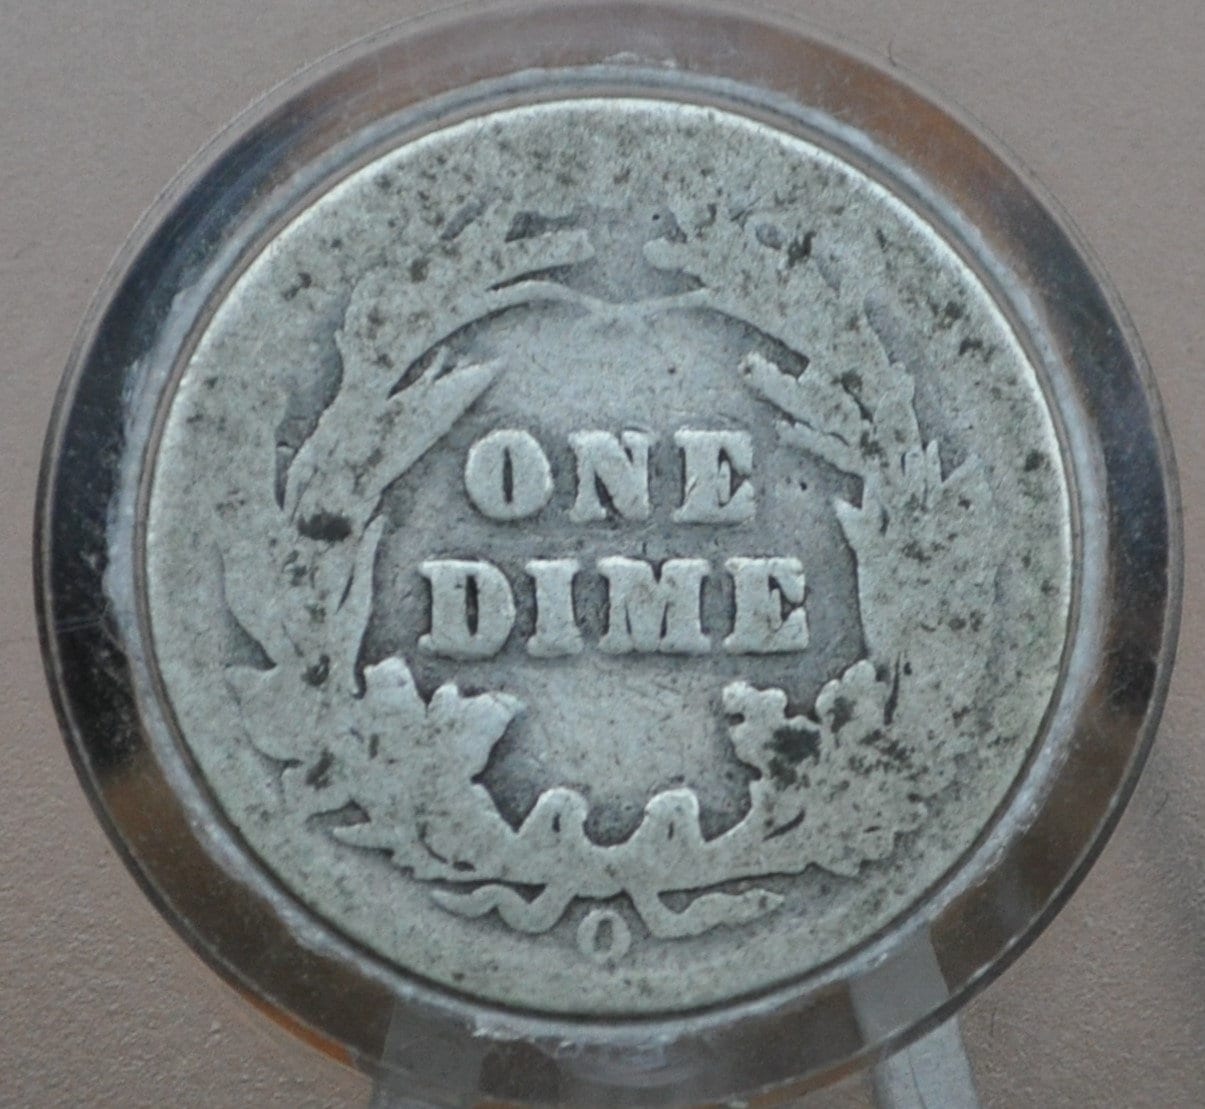 1901-O Barber Silver Dime - G (Good) Grade / Condition - New Orleans Mint - 1901 O Barber Dime - Silver Dimes